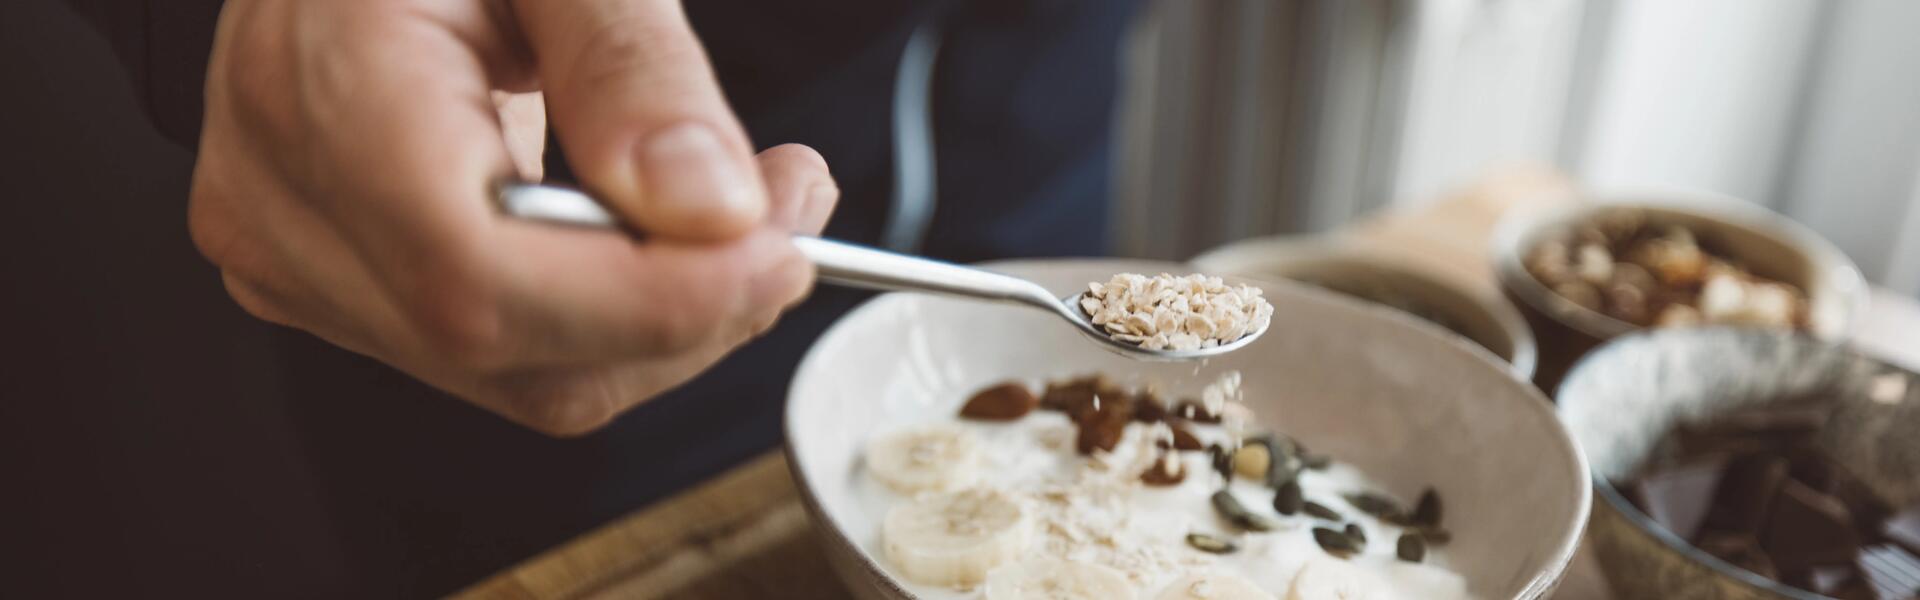 Nos conseils pour composer votre petit-déjeuner idéal